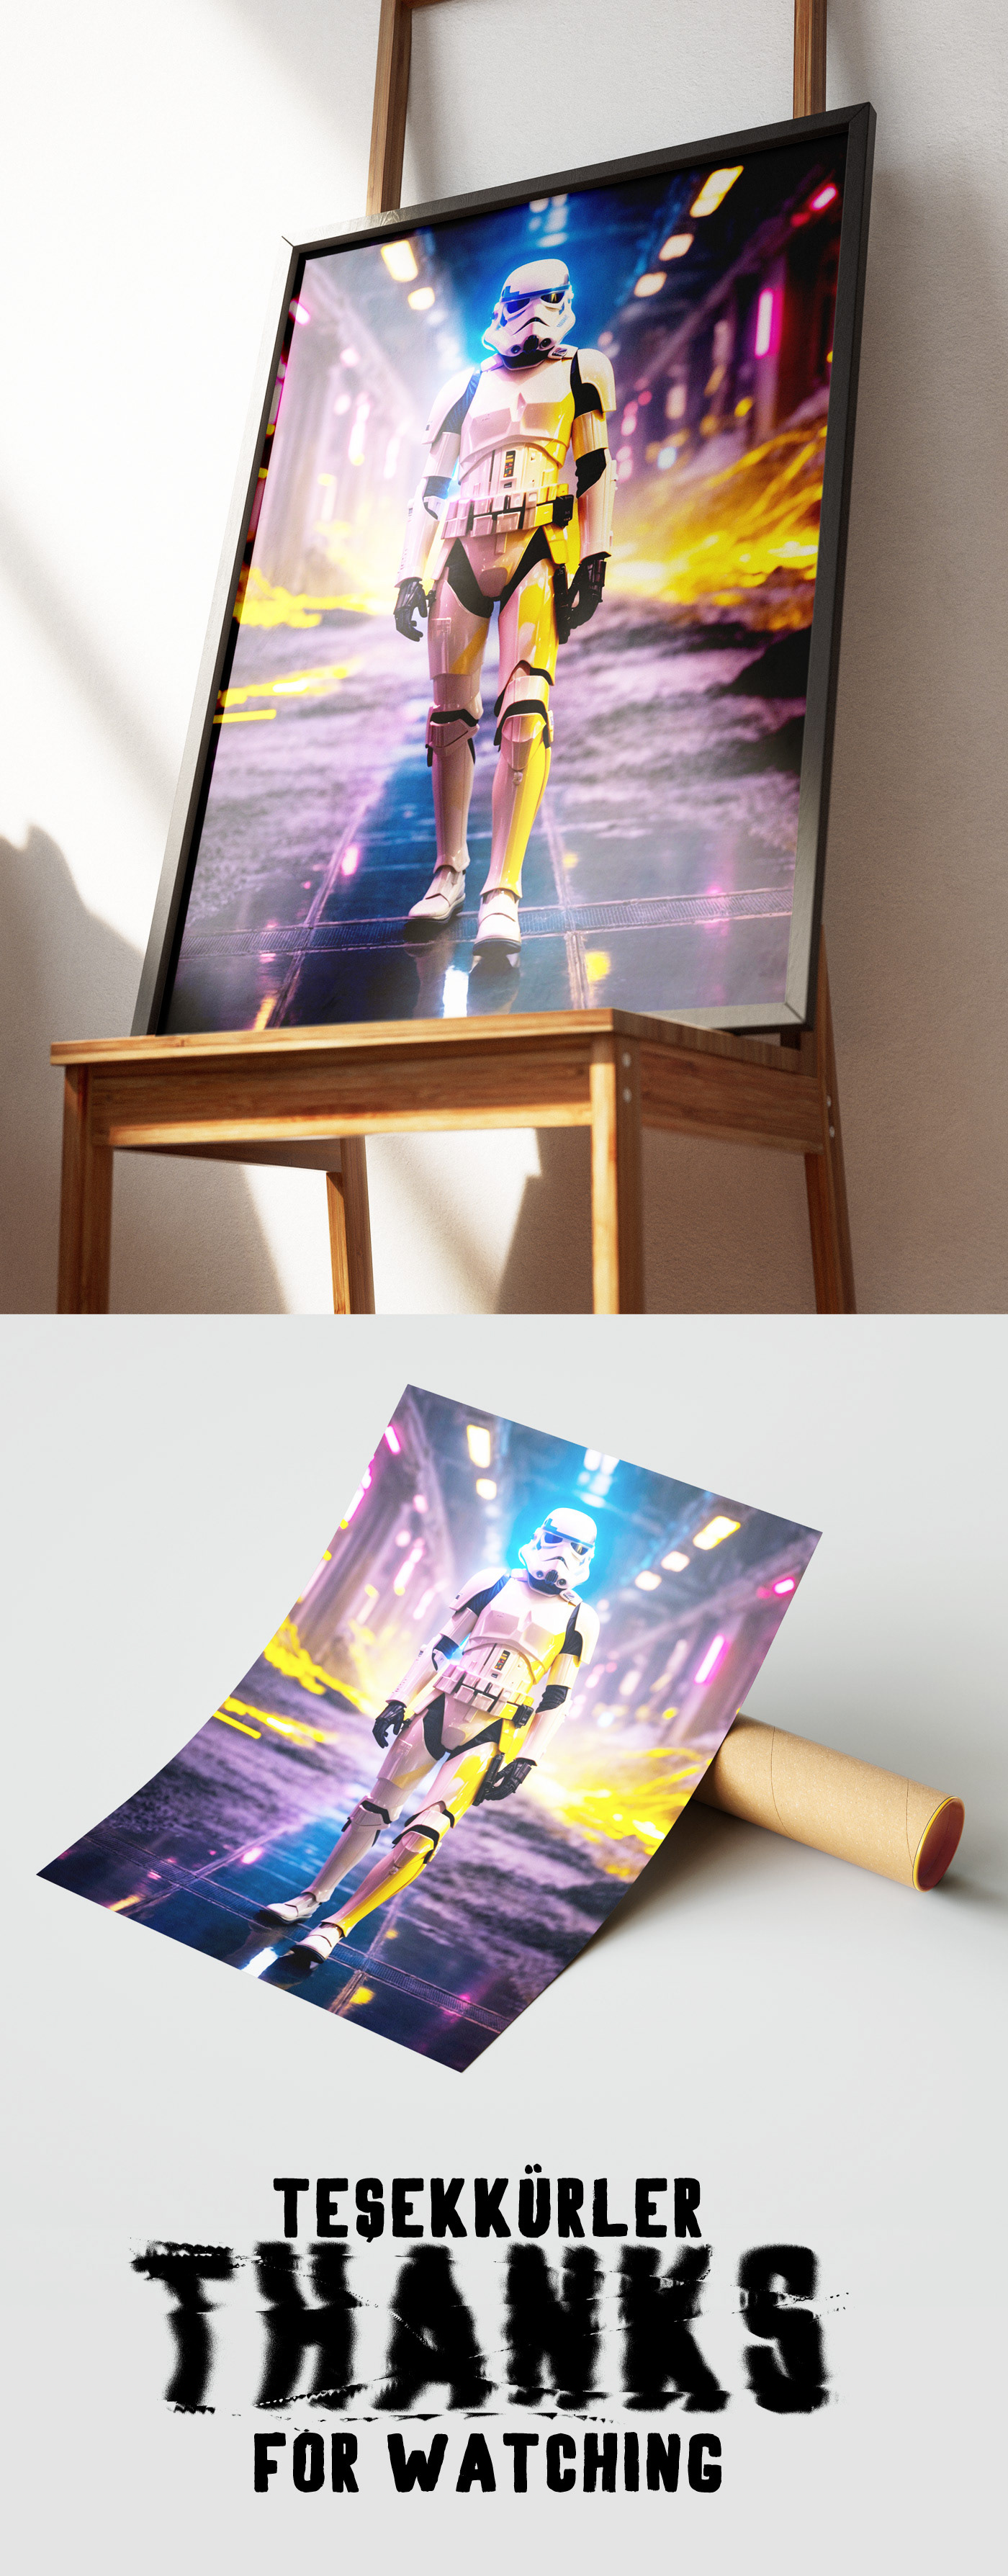 stormtrooper star wars Digital Art  poster c4d cinema4d Render 3D photoshop Graphic Designer